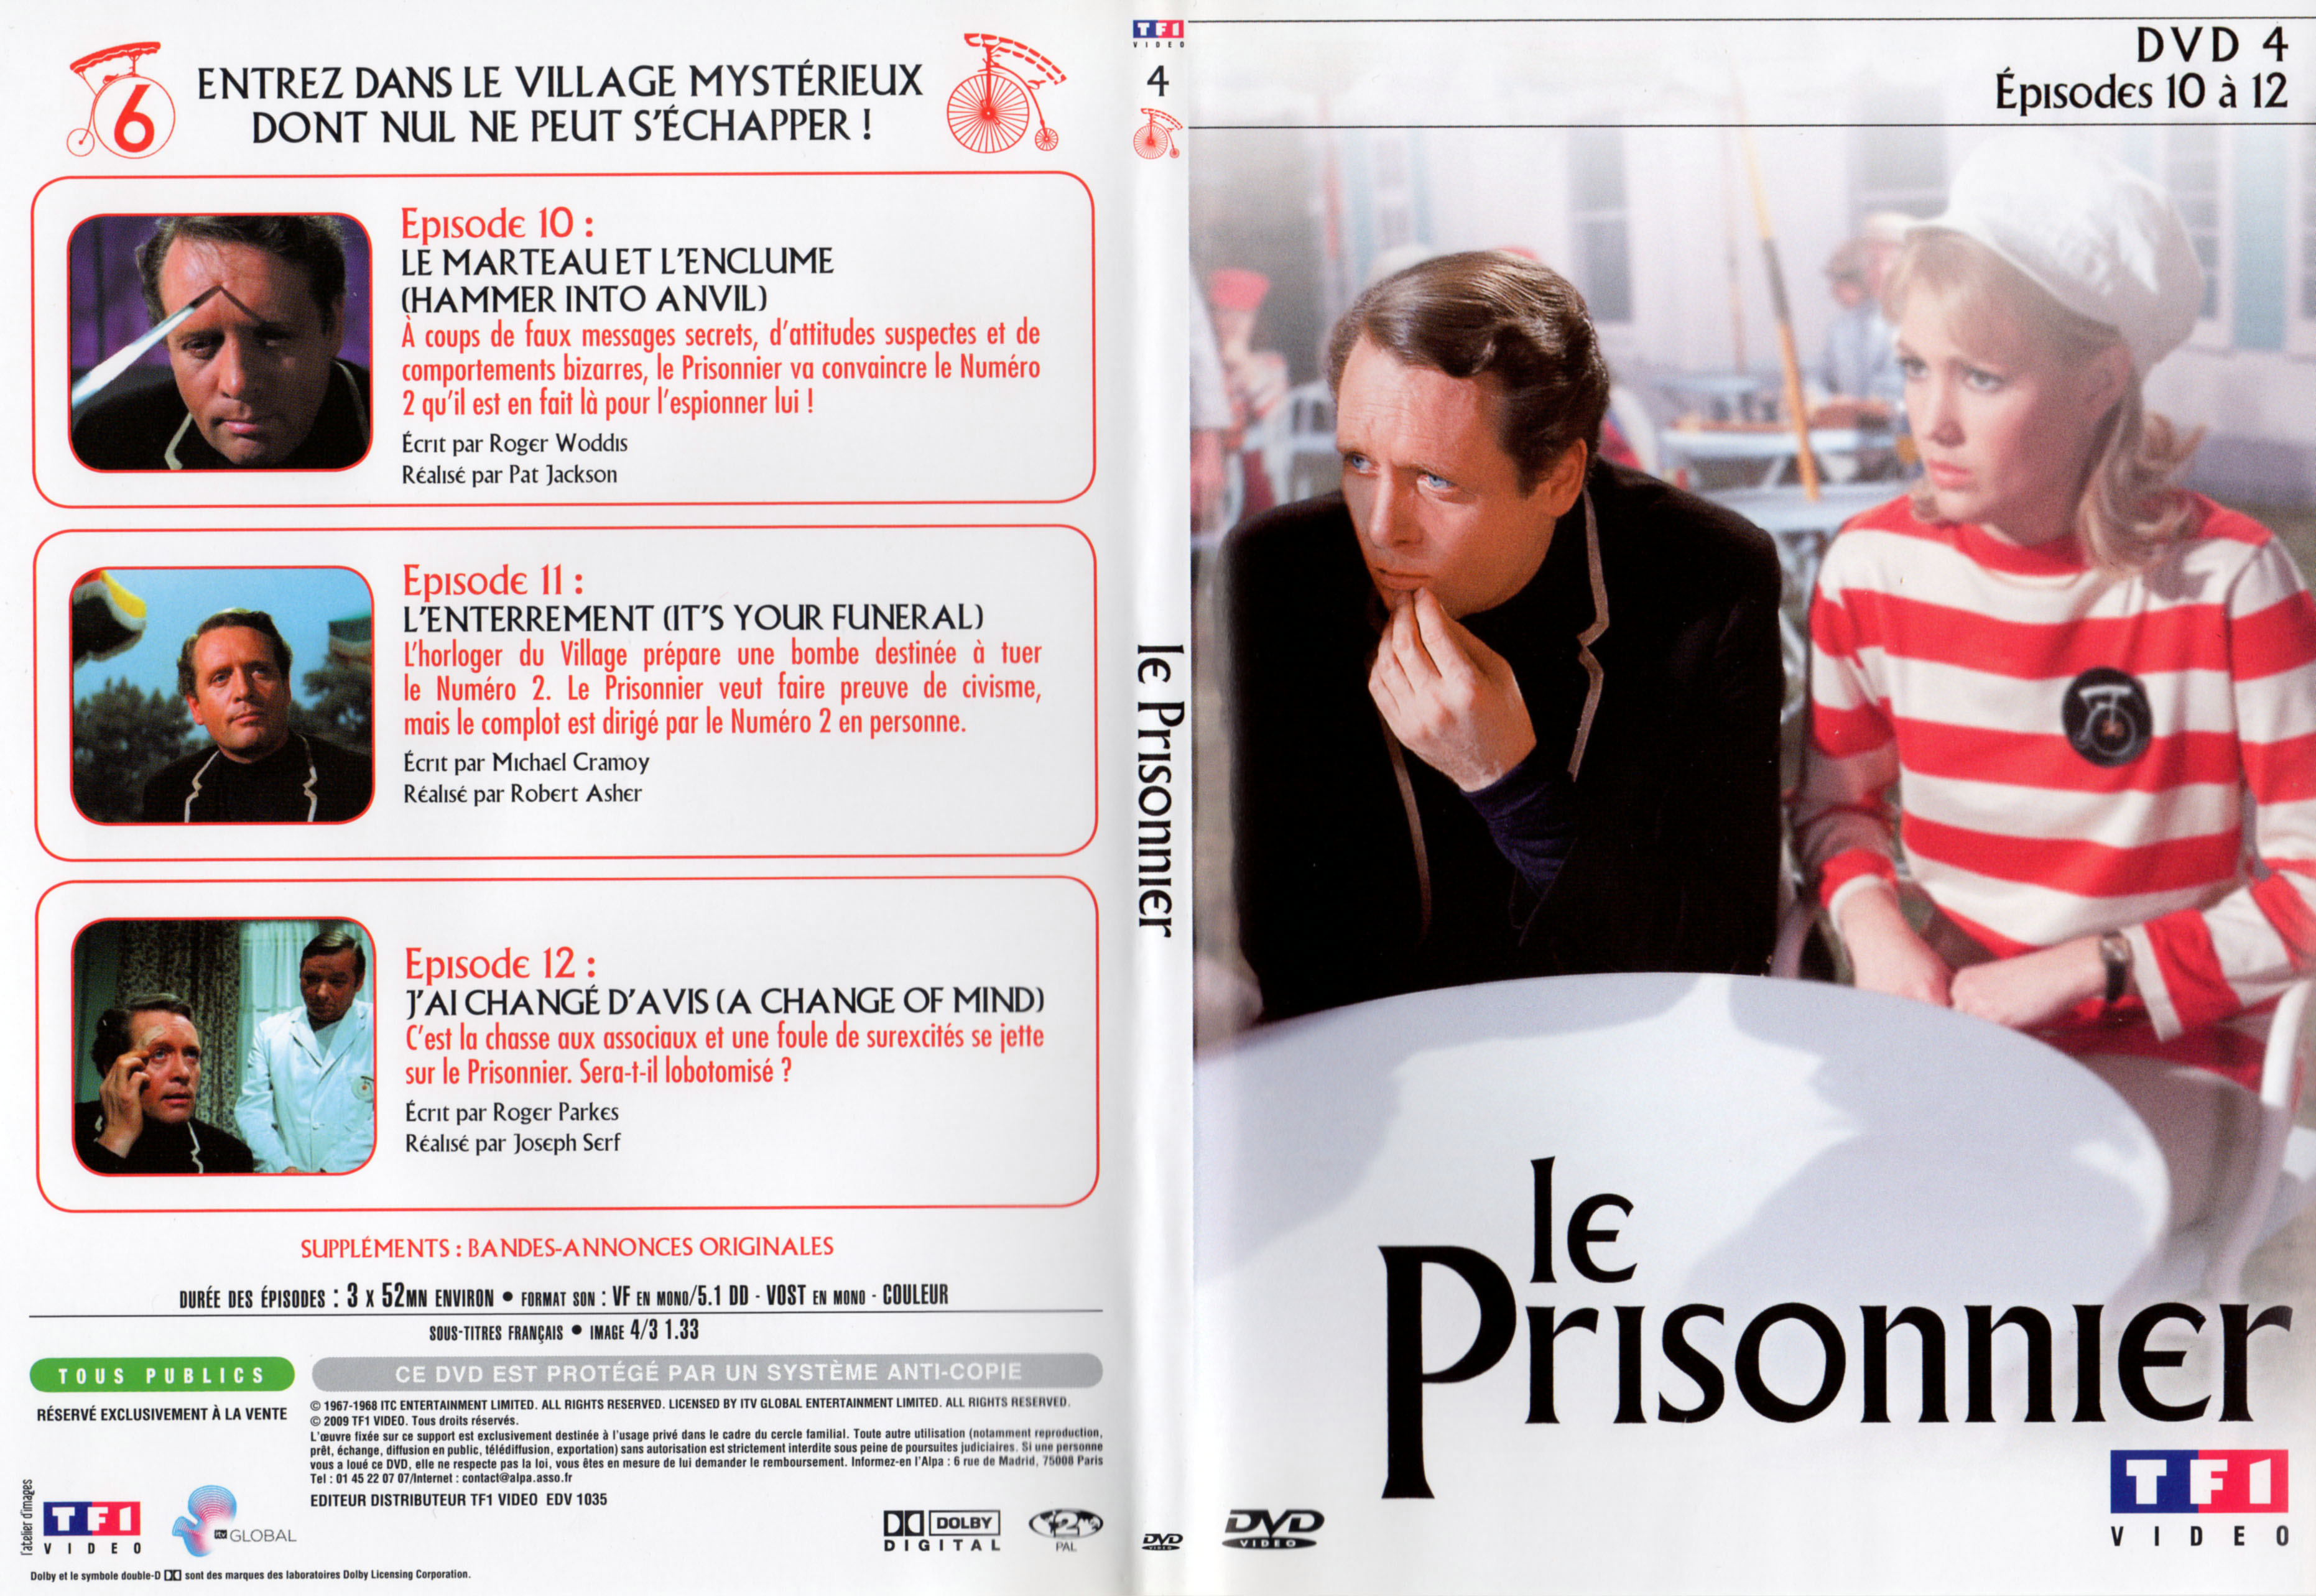 Jaquette DVD Le prisonnier DVD 4 v2